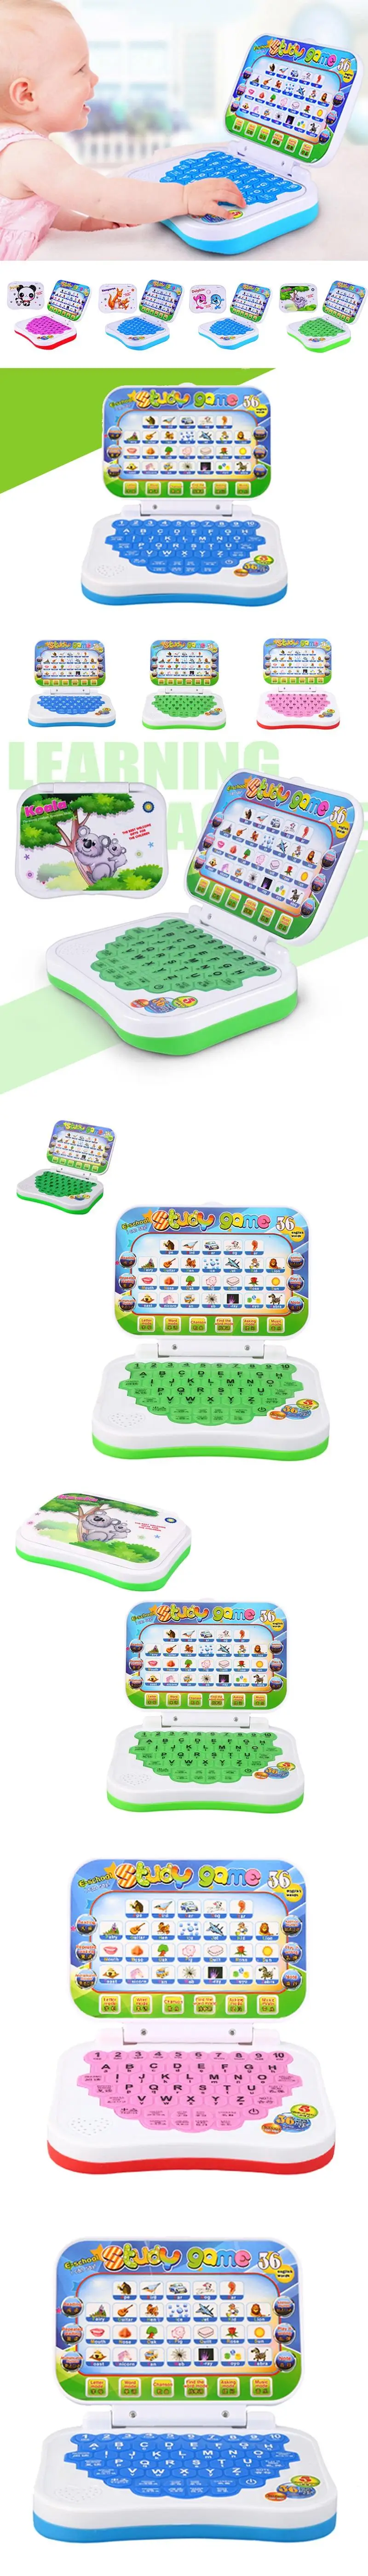 Горячее предложение! Распродажа! Многофункциональная обучающая машина Английский ранний планшетный компьютер игрушка Детские Развивающие игрушки для детей обучающая машина для чтения